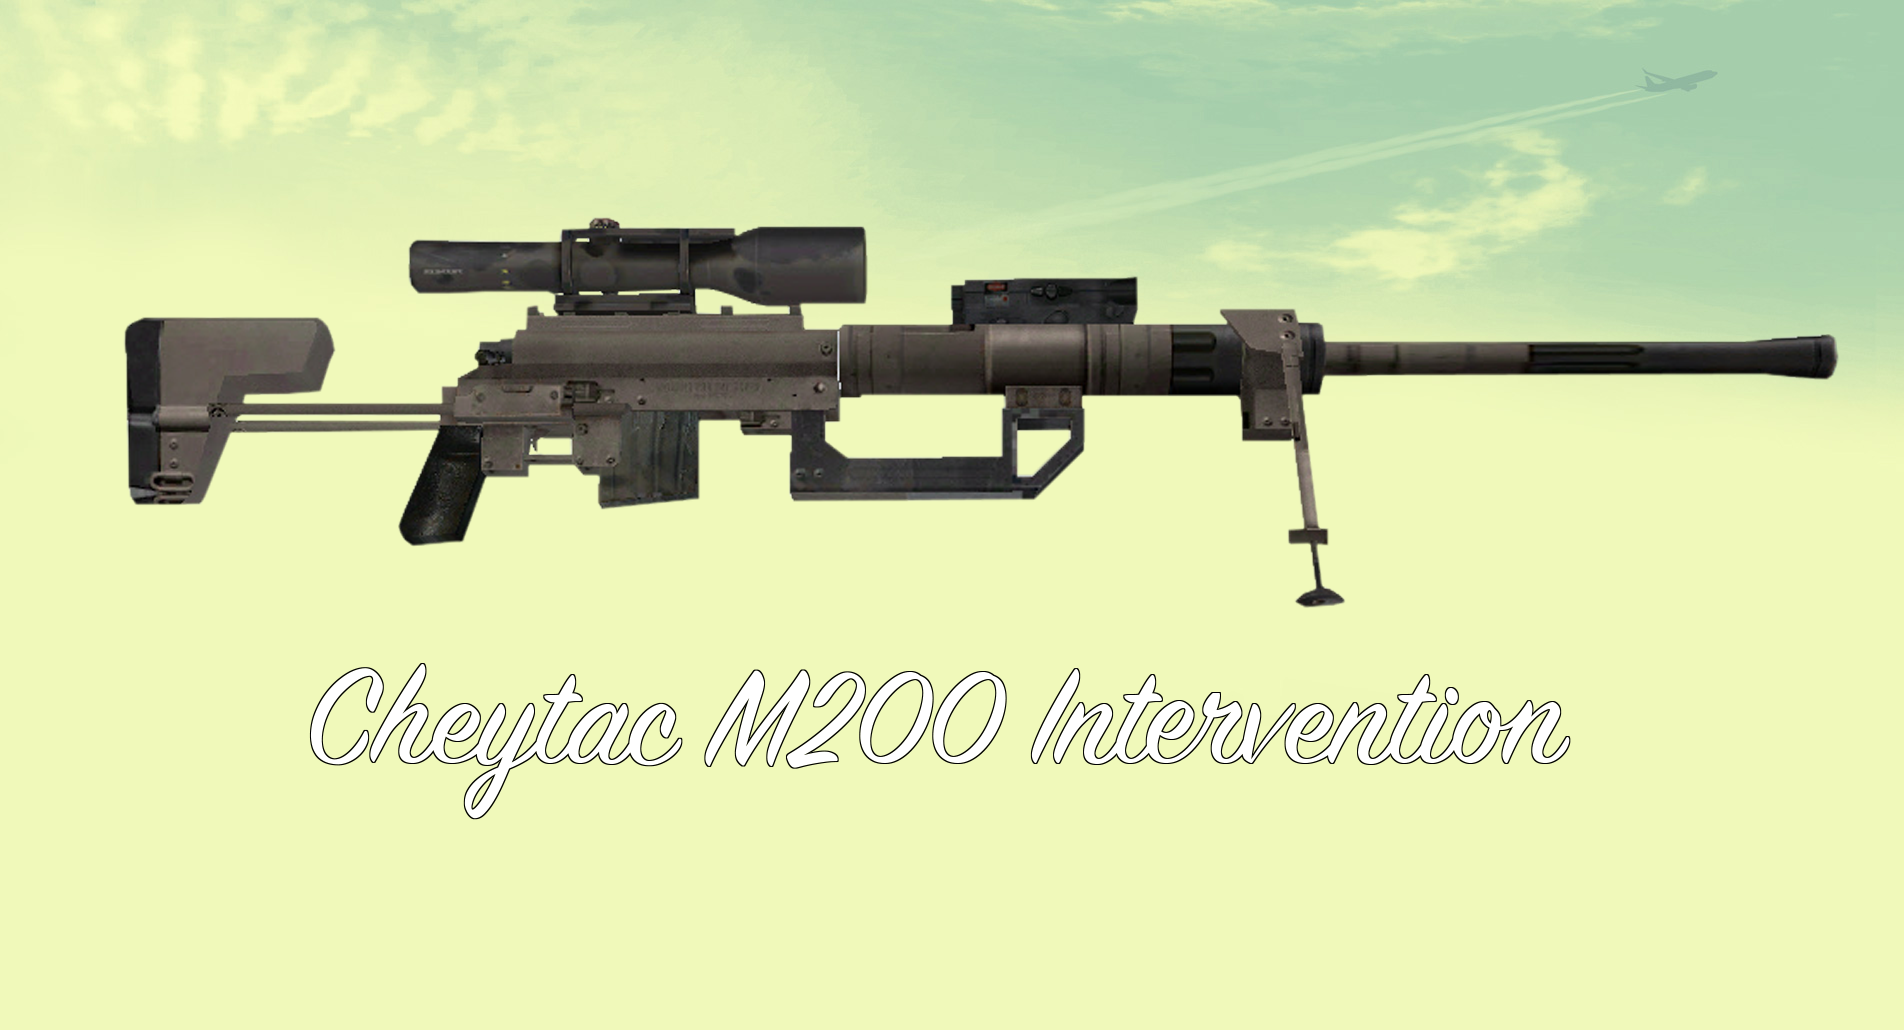 cheytac intervention sniper rifle